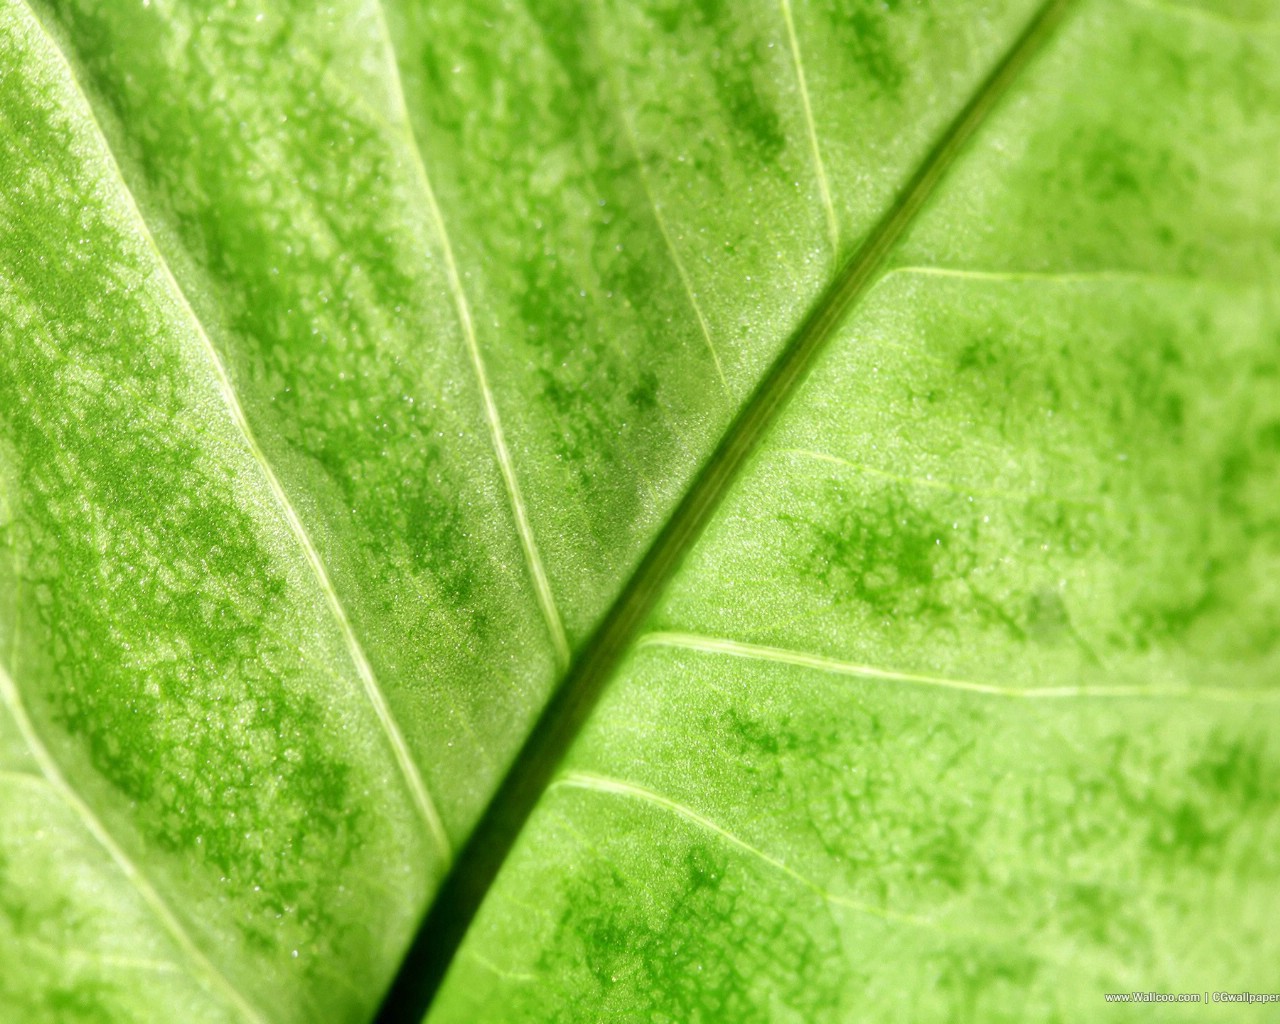 壁纸1280x1024高清晰植物绿叶壁纸 高清晰植物绿叶壁纸 高清晰植物绿叶图片 高清晰植物绿叶素材 植物壁纸 植物图库 植物图片素材桌面壁纸